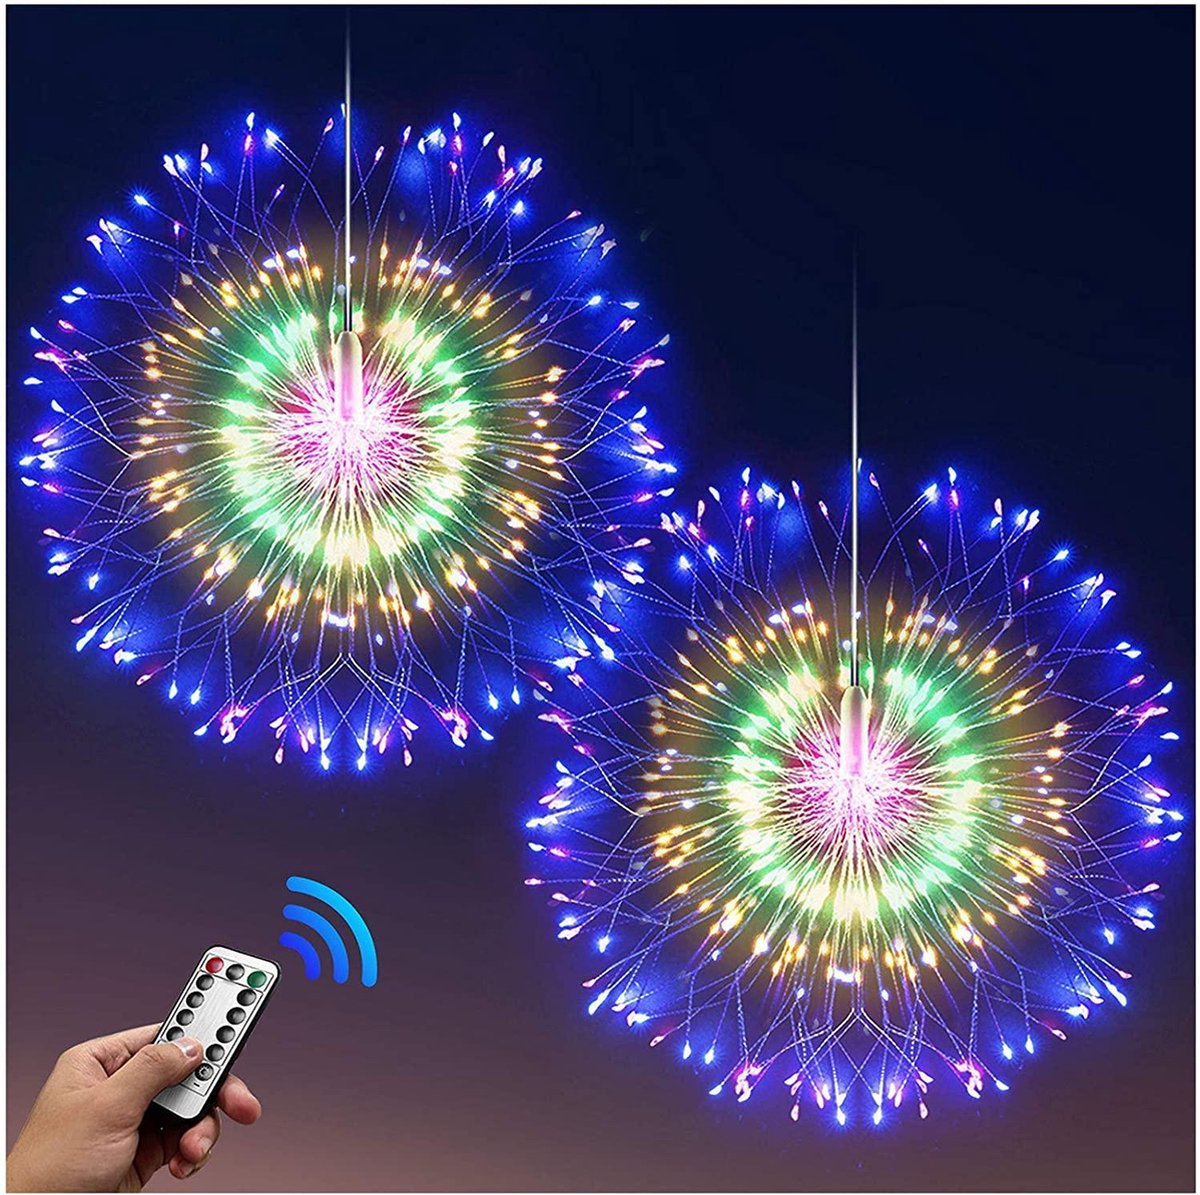 Led Verlichting op batterij - lampjes - fireworks led lights - sfeerverlichting - feestverlichting - Multi colour - vuurwerkverlichting op battterij - 30 CM - met afstandbediening